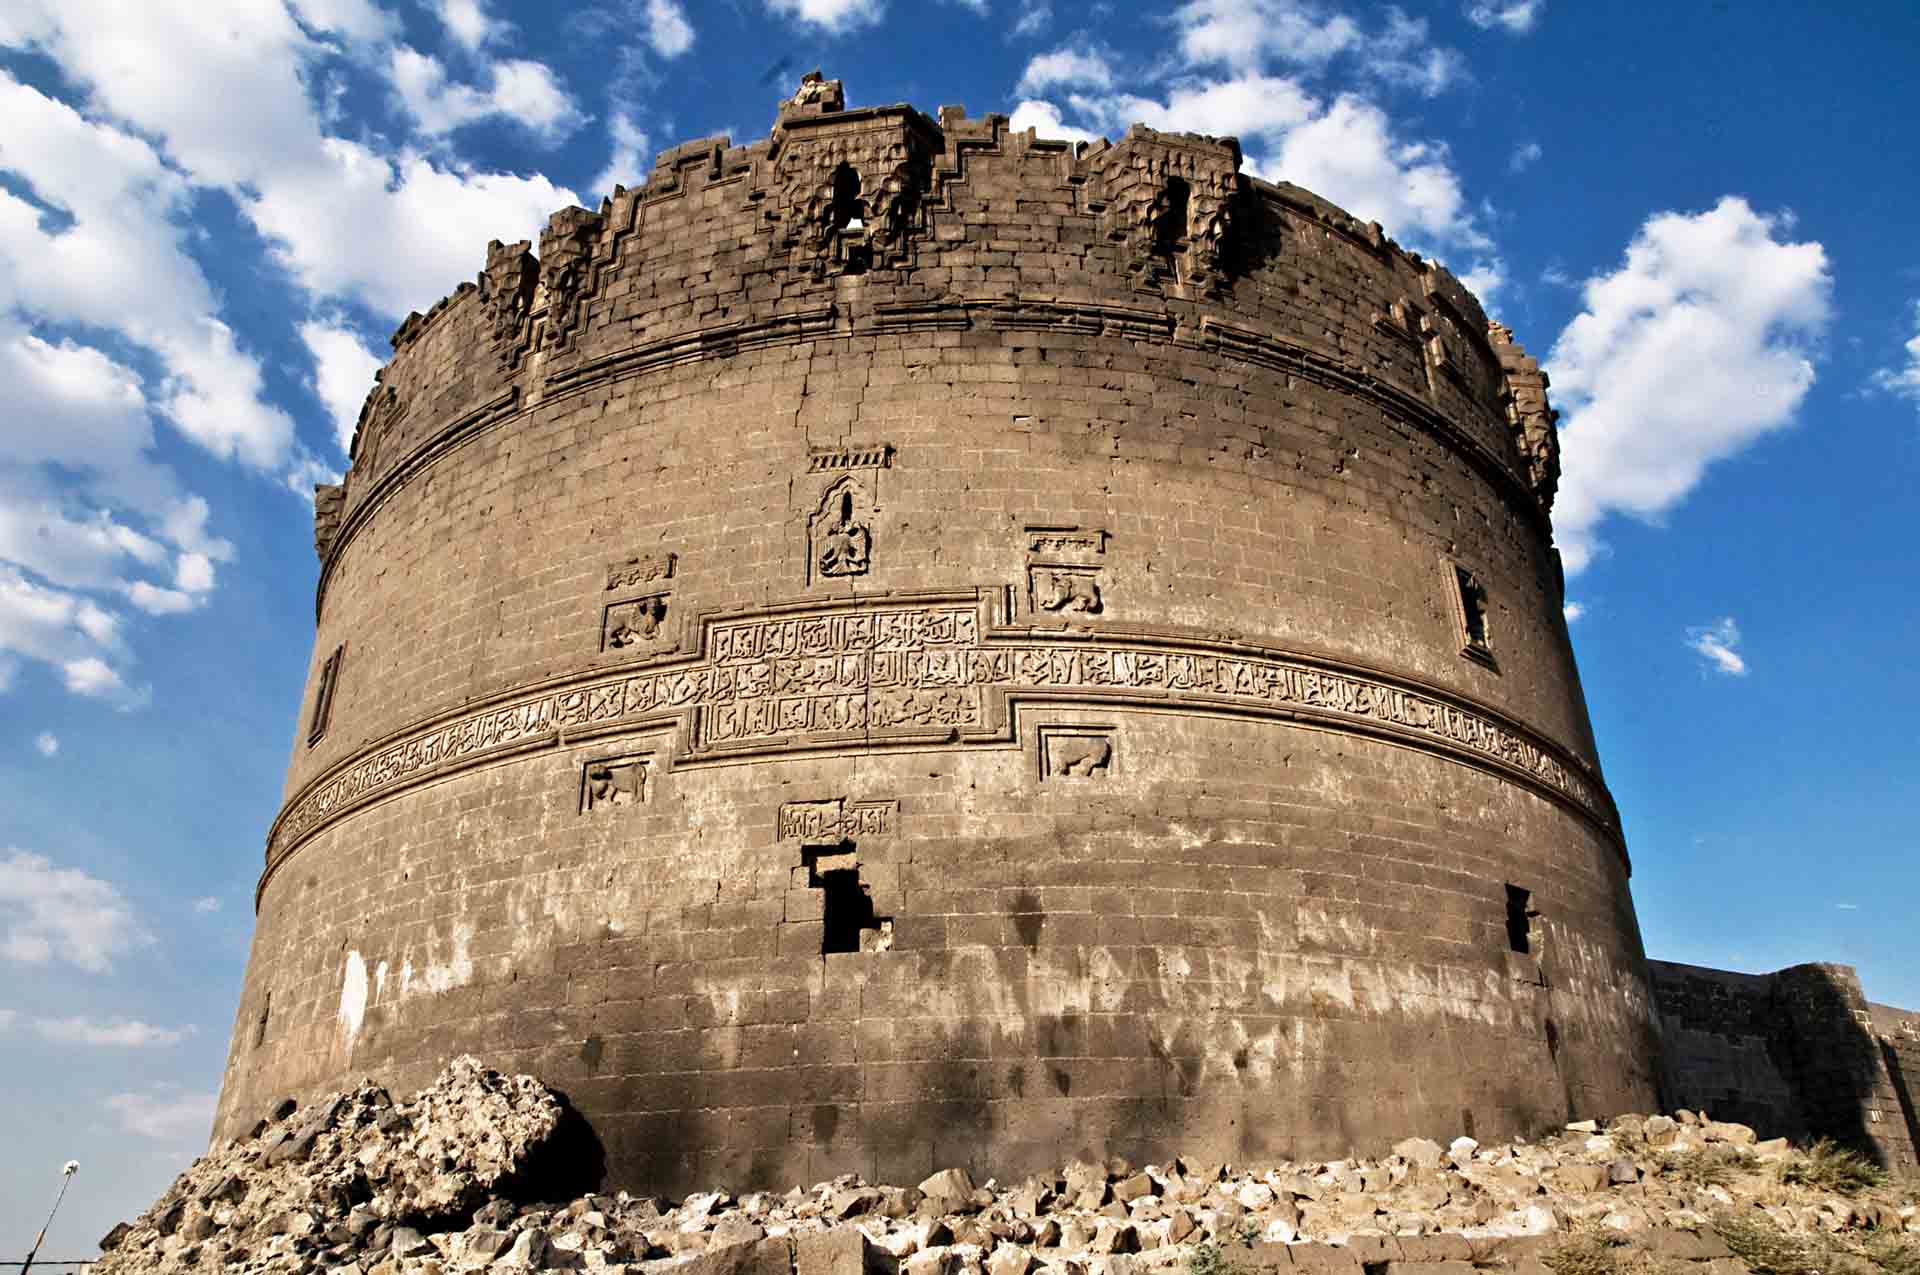 Chiêm ngưỡng vẻ kỳ vĩ của Diyarbakir - Tường thành dài thứ 2 thế giới bị ảnh hưởng bởi động đất tại Thổ Nhĩ Kỳ - Ảnh 9.